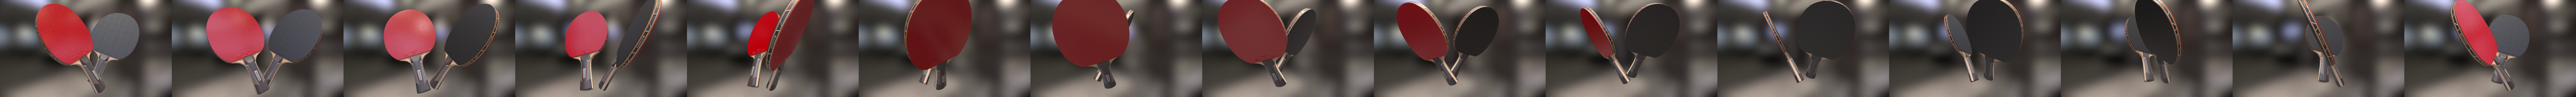 modèle 3D de Table De Ping Pong Basse Polygone Rouge - TurboSquid